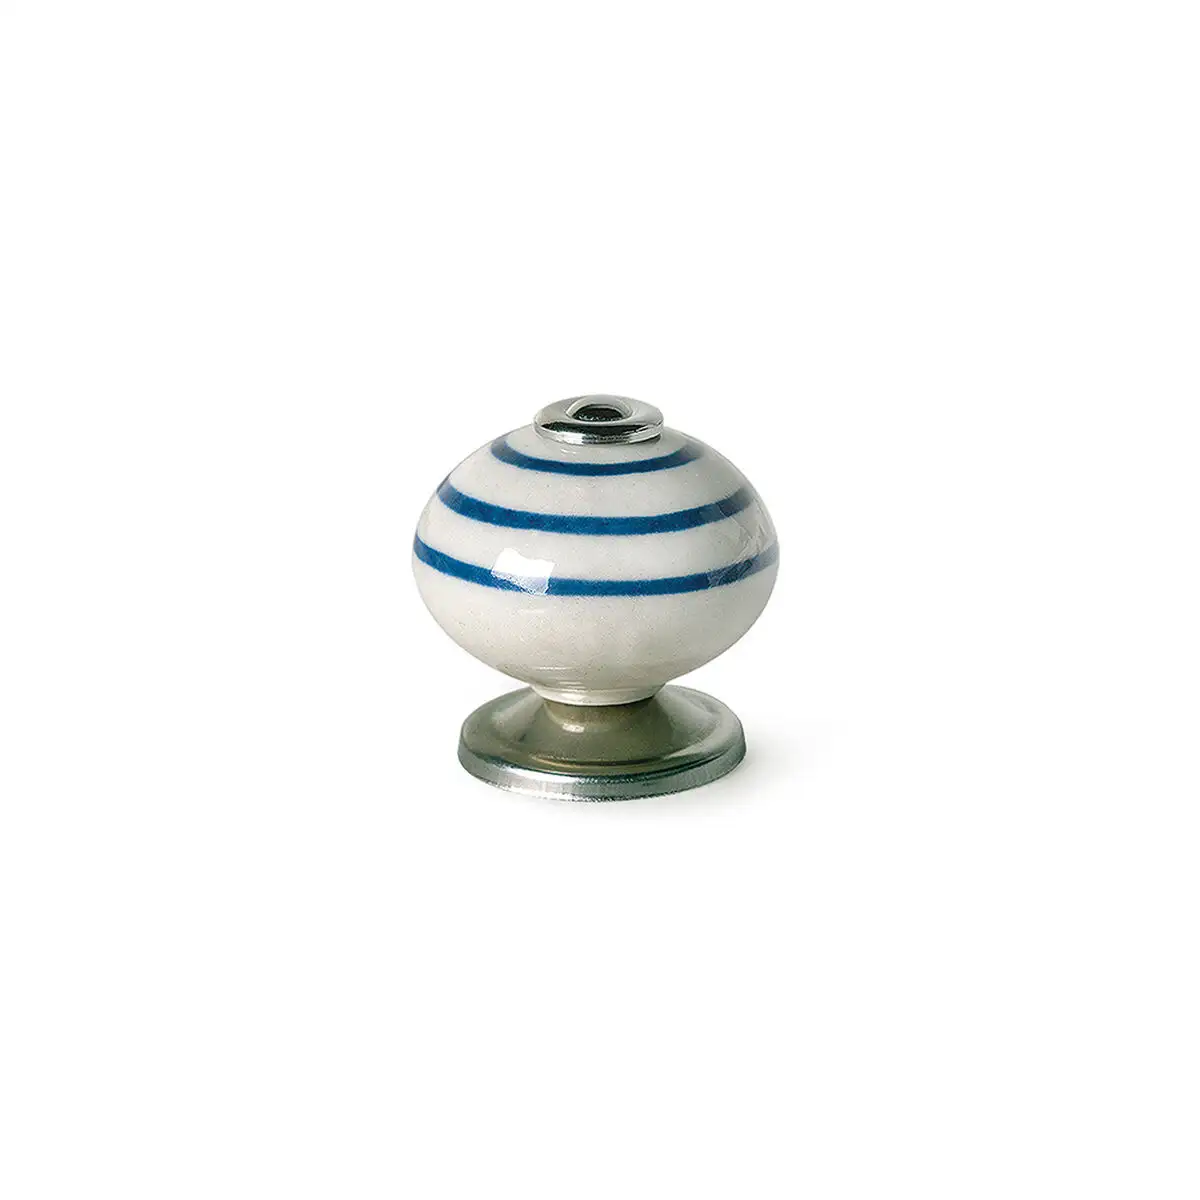 Pommeau rei e501 rond porcelaine bleu metal 4 unites o 40 x 36 mm _1209. DIAYTAR SENEGAL - L'Art du Shopping Distinctif. Naviguez à travers notre gamme soigneusement sélectionnée et choisissez des produits qui définissent votre mode de vie.